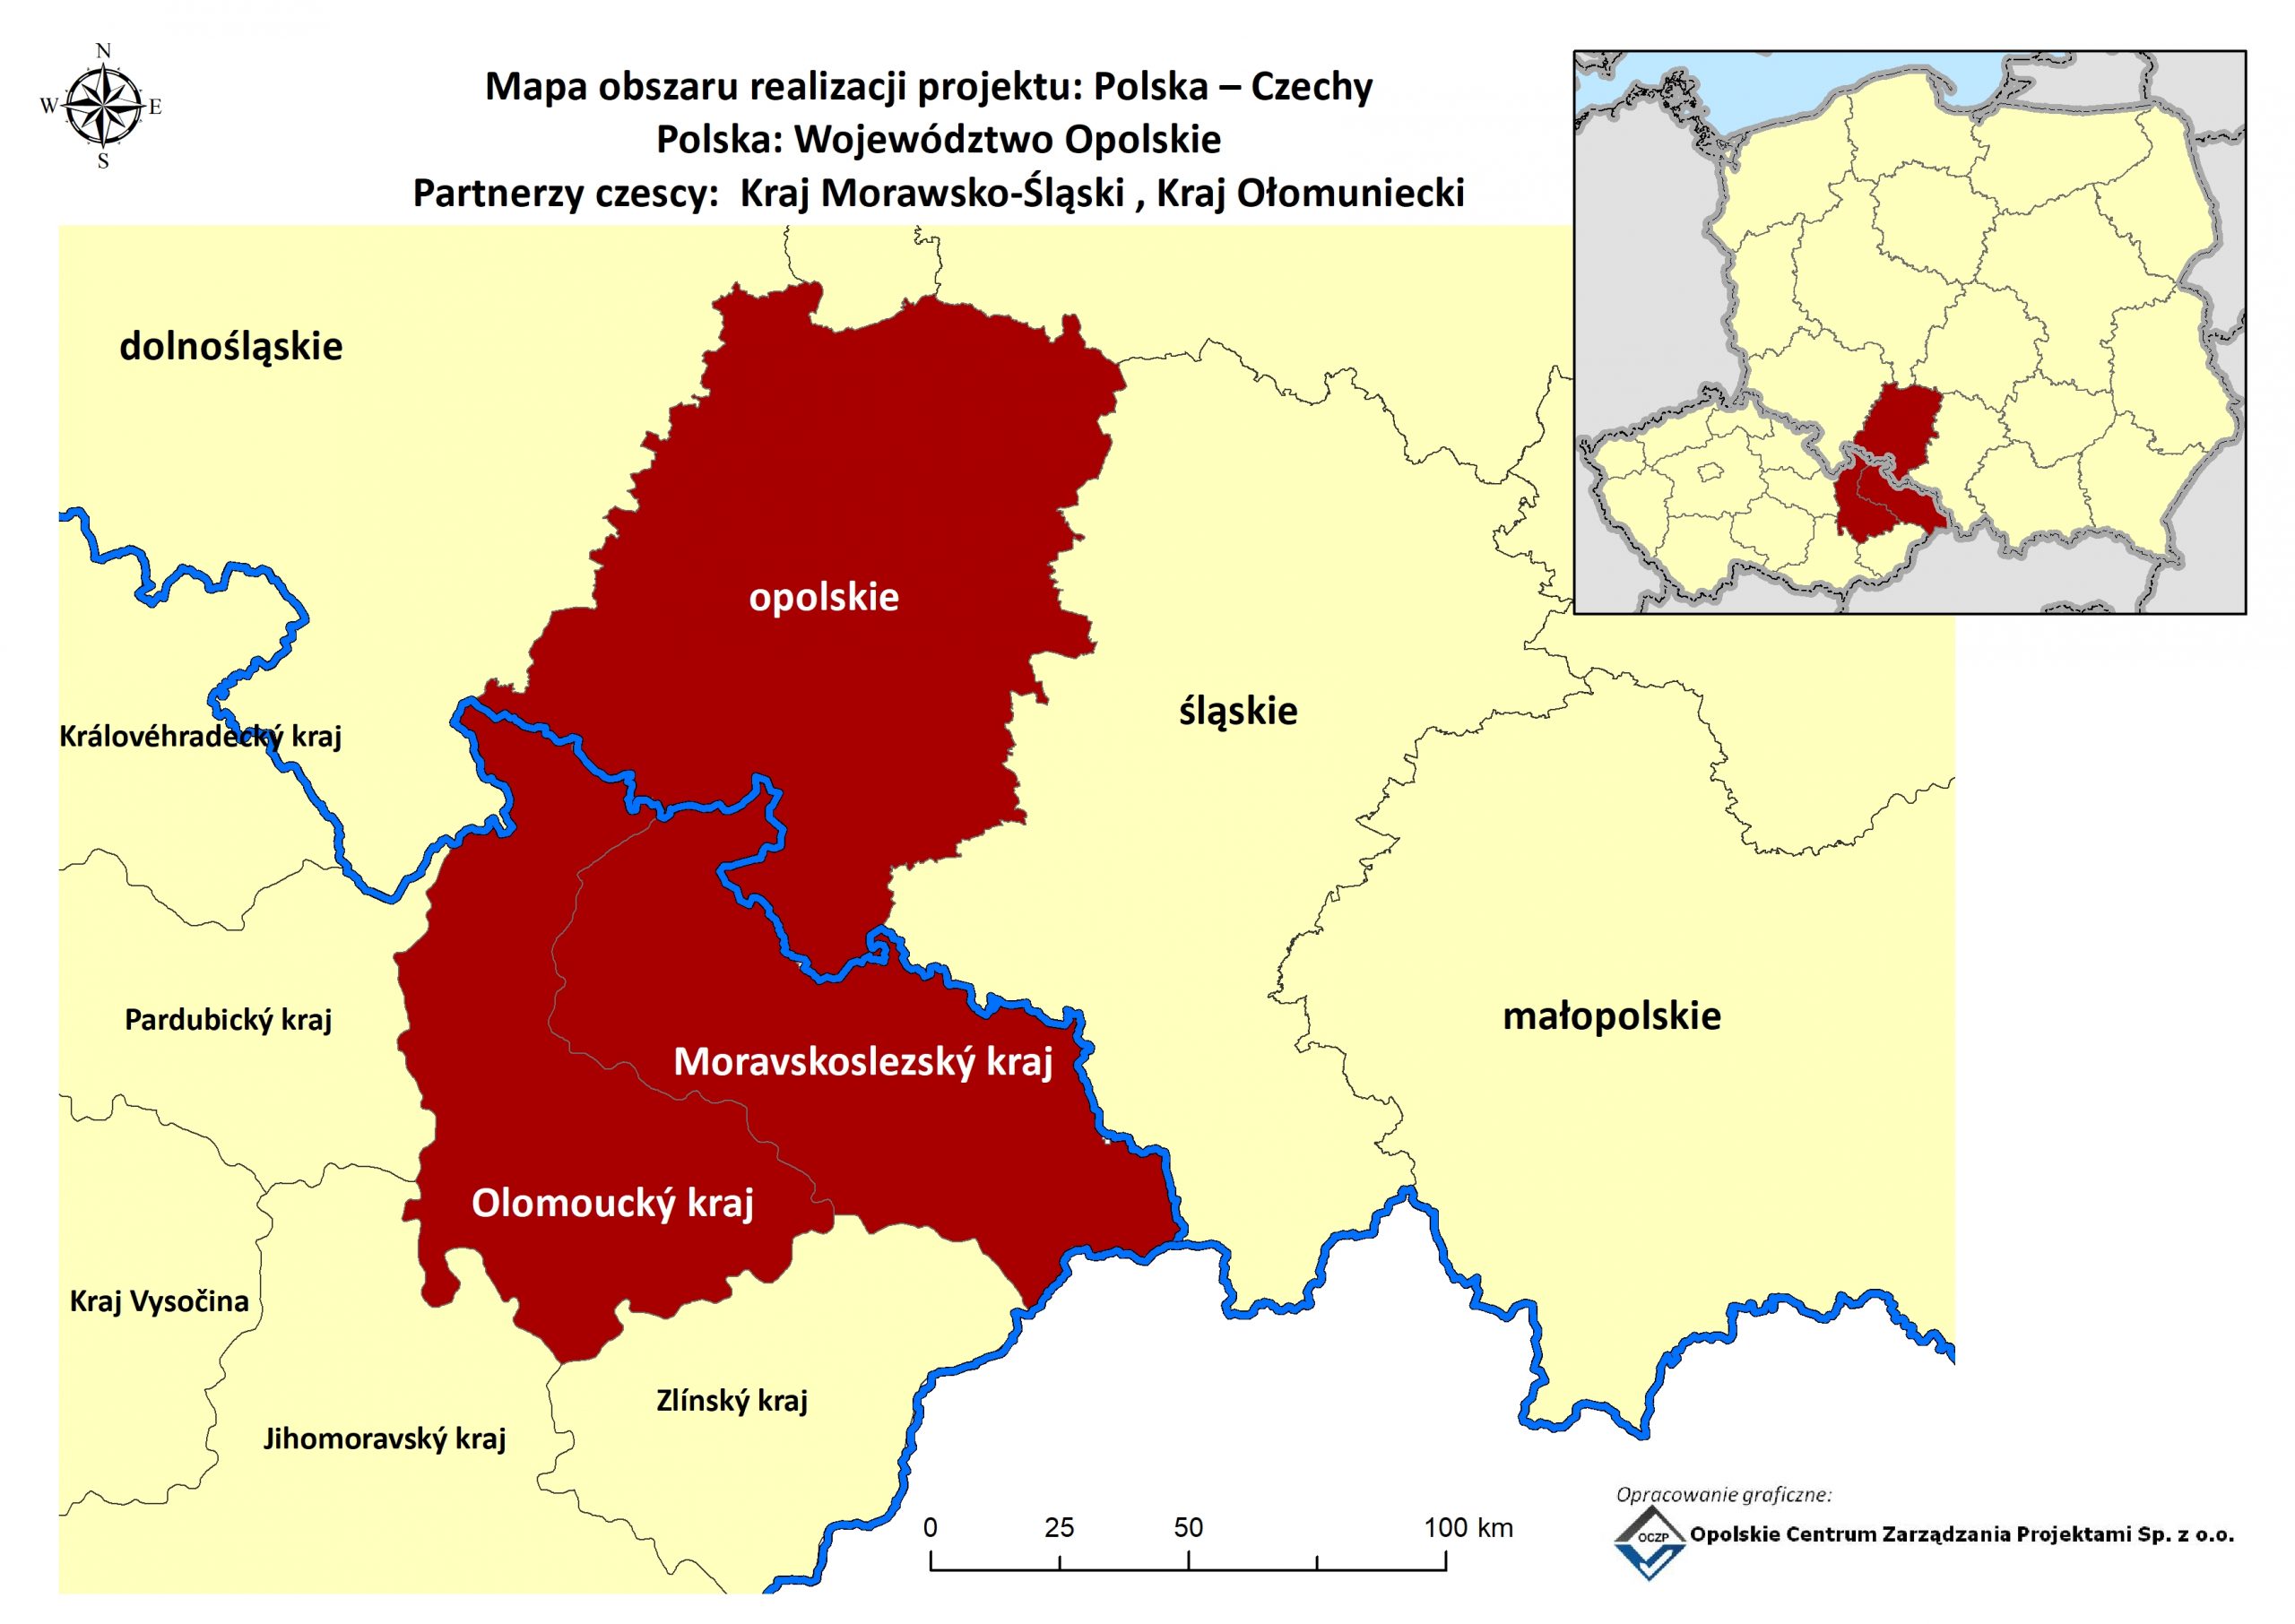 Obraz przedstawia mapę obszaru realizacji projektu LIFE. Kolorem brązowym oznaczono obszar województwa opolskiego jako beneficjenta koordynującego, a także obszar Kraju Morawsko-Śląskiego i Kraju Ołomunieckiego po stronie Czech.